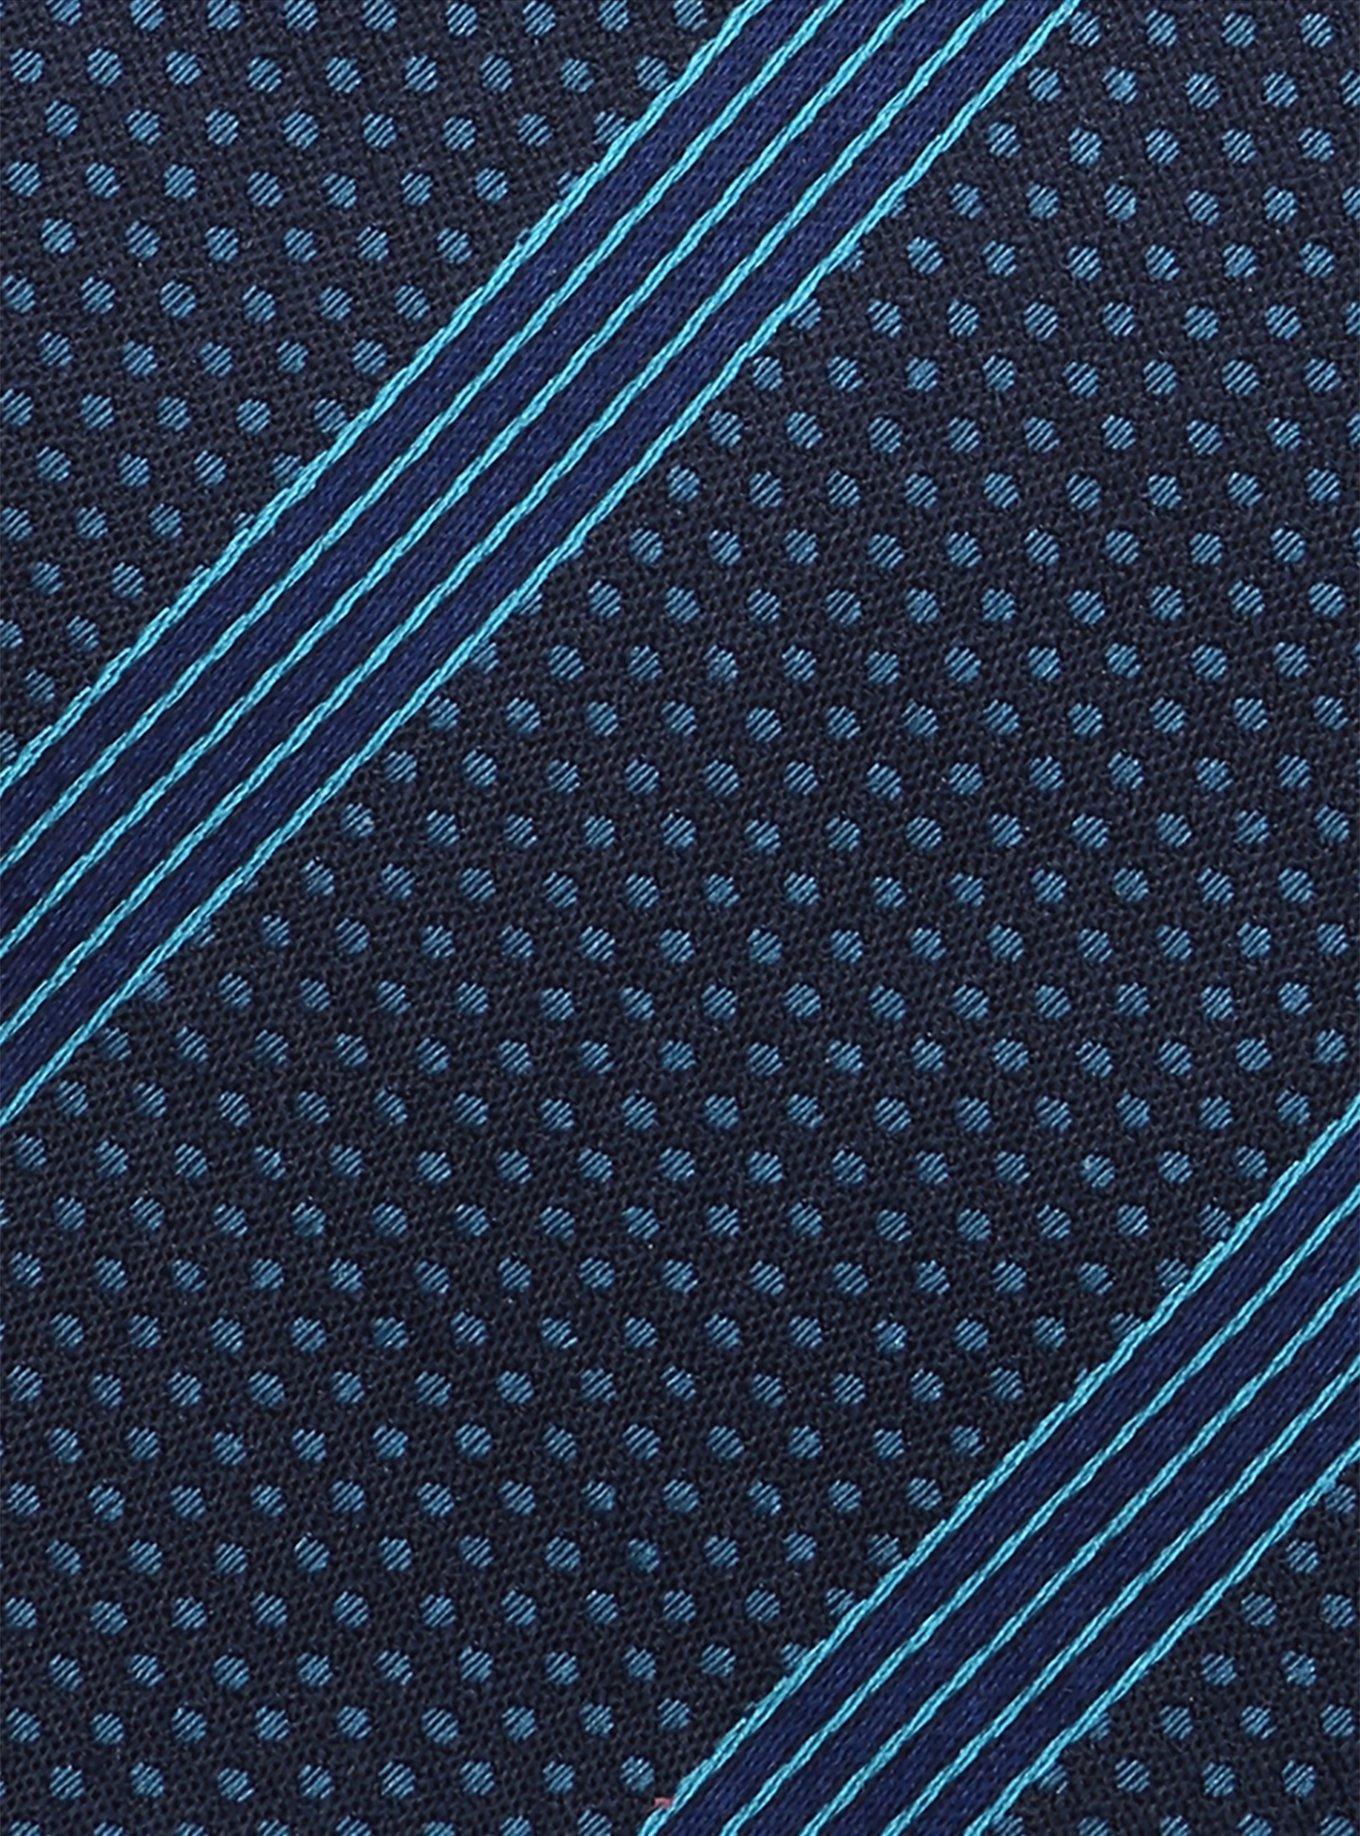 Star Wars Millennium Falcon Stripe Tie, , alternate